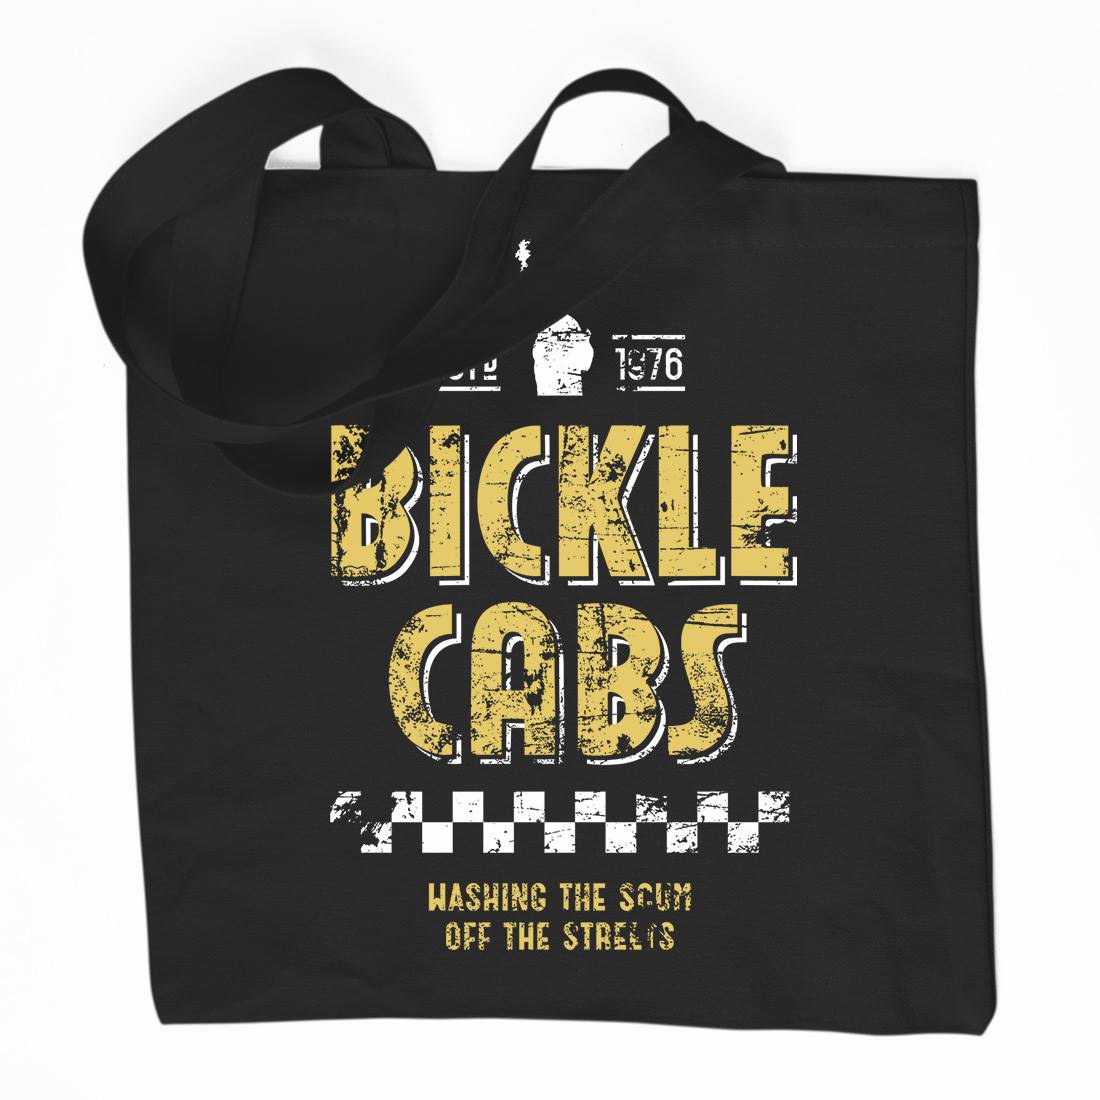 Bickle Cabs Organic Premium Cotton Tote Bag Retro D306